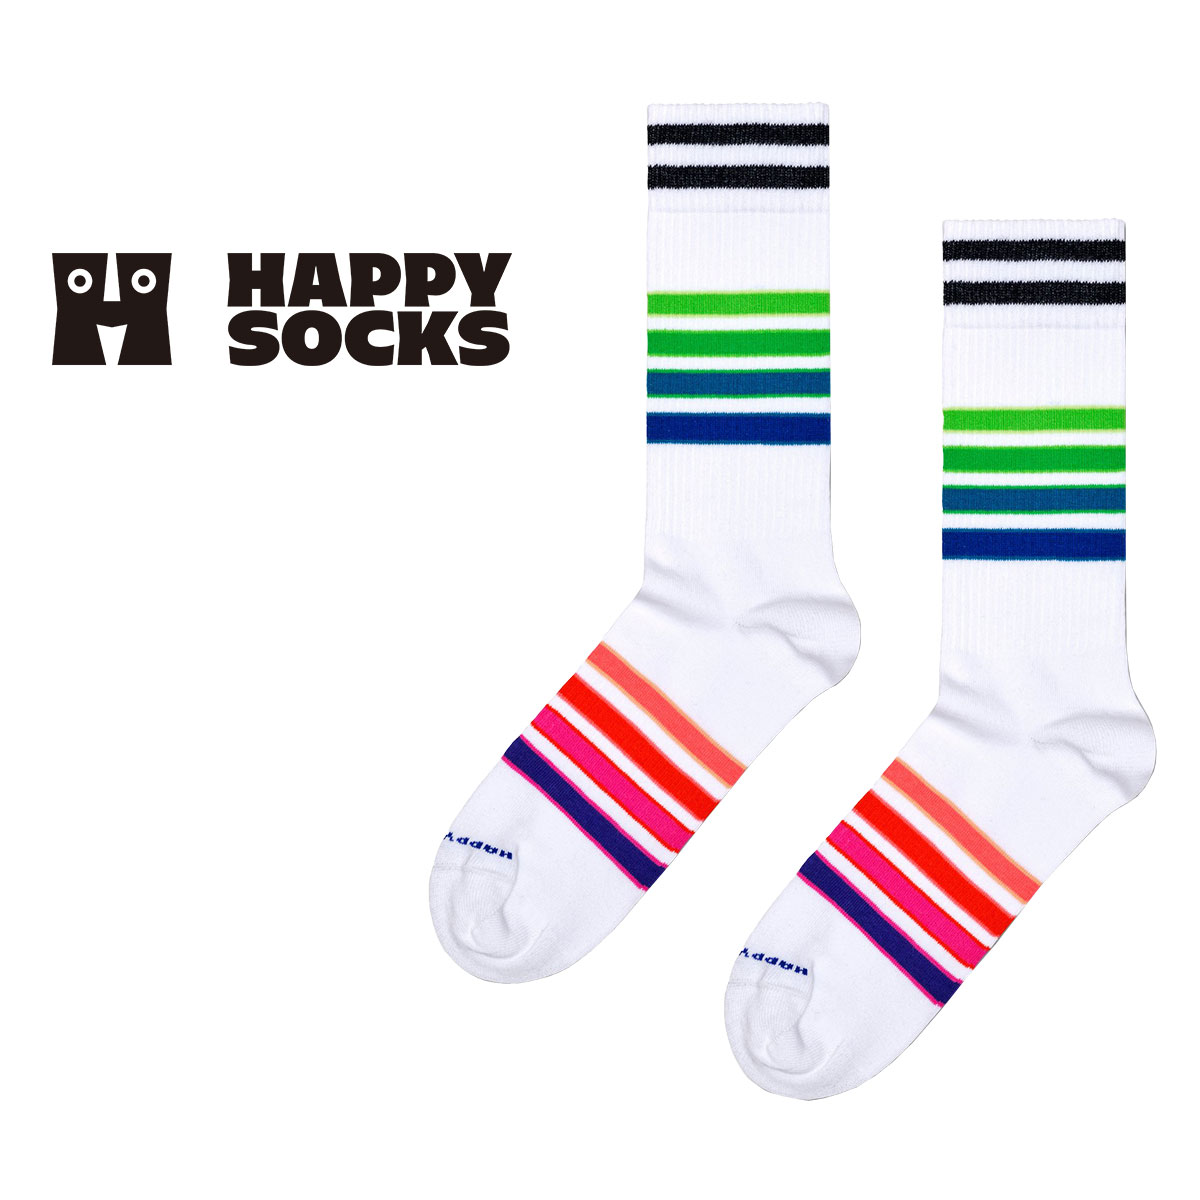 【24SS】Happy Socks ハッピーソックス Street Stripe Sneaker ( ストリート ストライプ )  クルー丈 ソックス ユニセックス メンズ ＆ レディース スポーツ 10240041